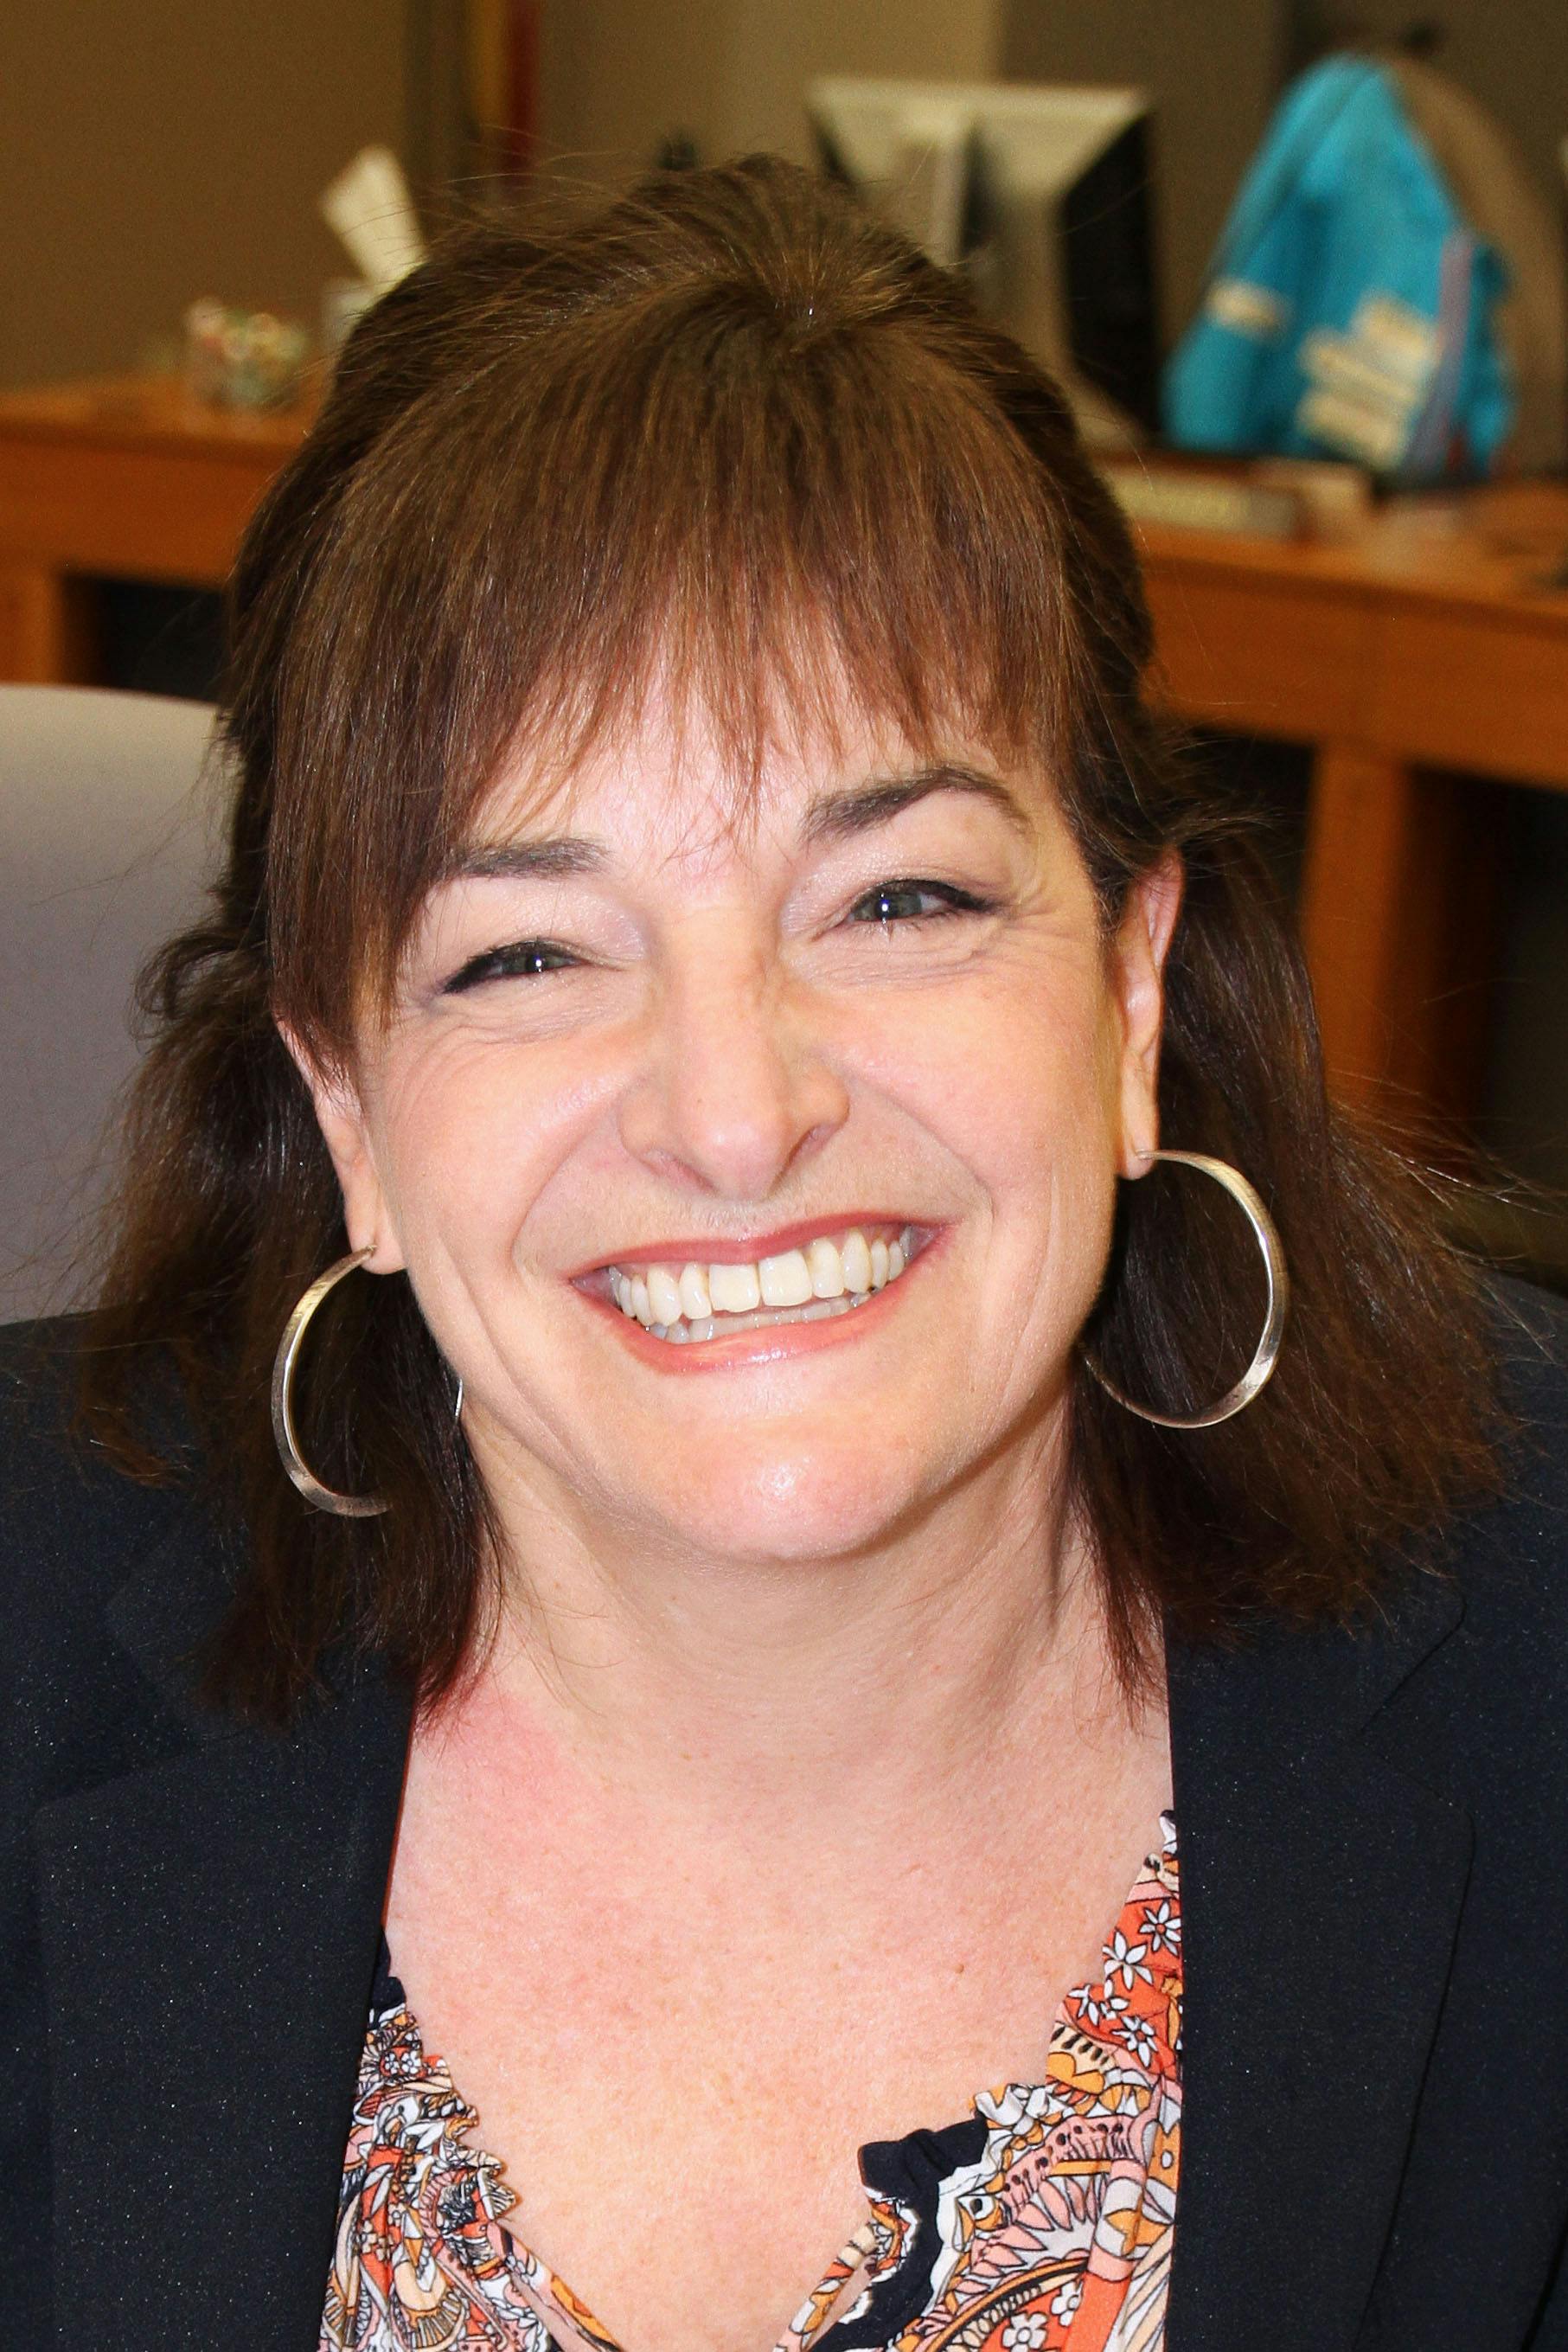 Team member, Susan Clovechok